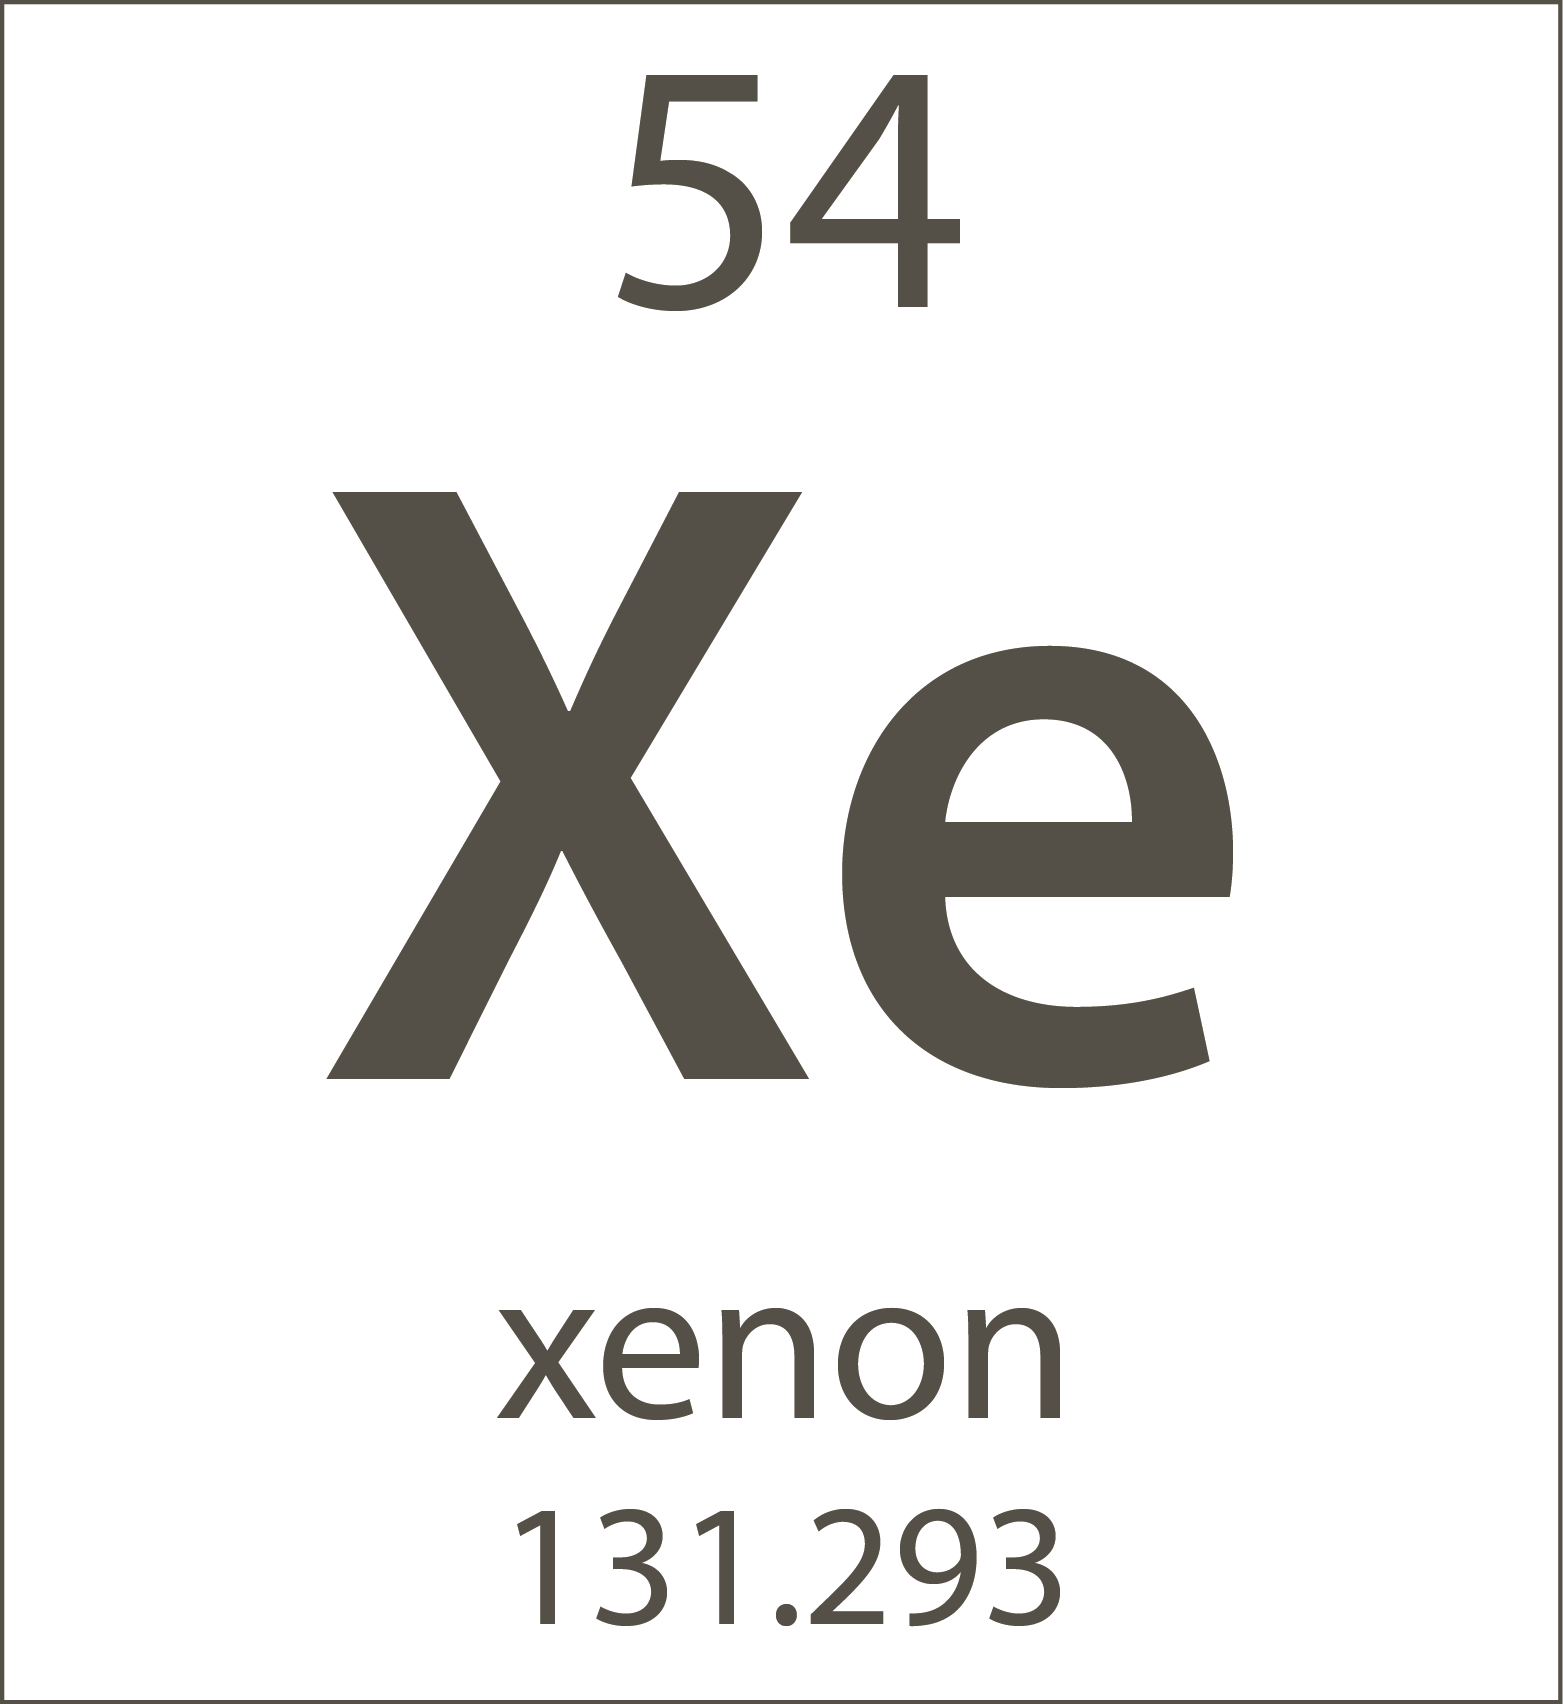 Ксенон номер. Ксенон хим элемент. Ксенон химический элемент в таблице. Ксенон химия элемент. Ксенон таблица Менделеева.